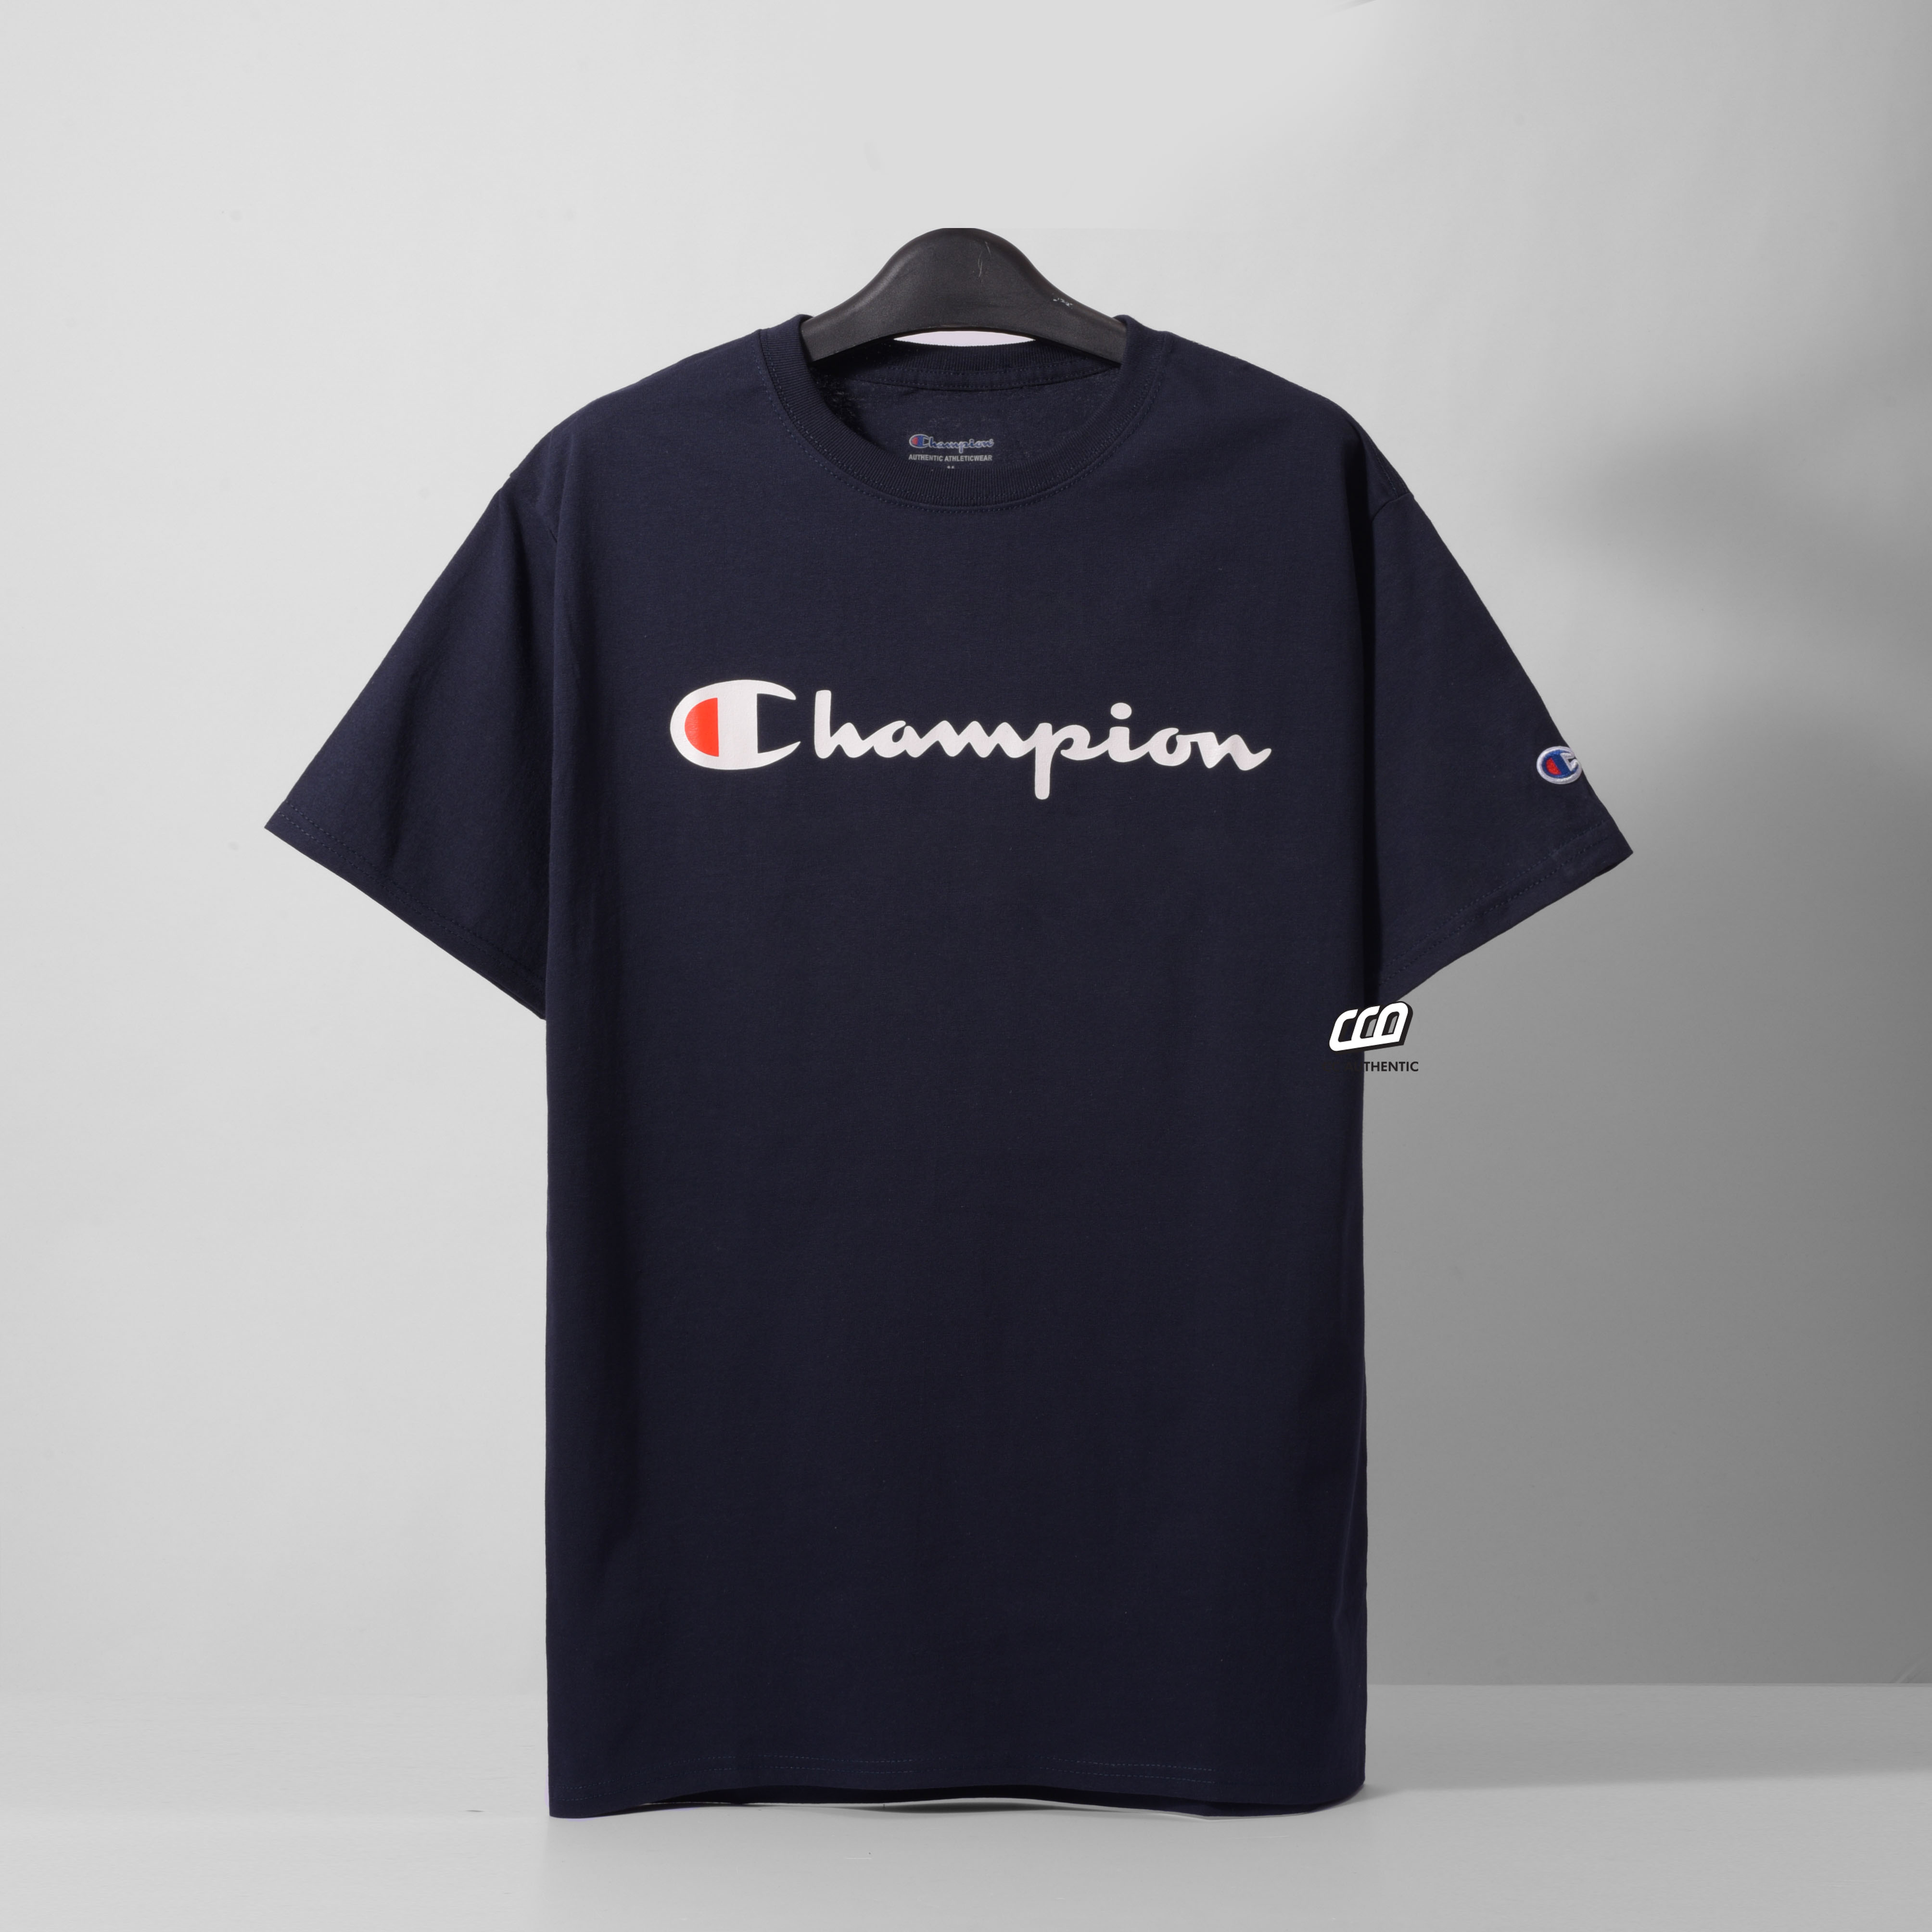 Champion Tagless Tshirt, Printed Logo - Navy